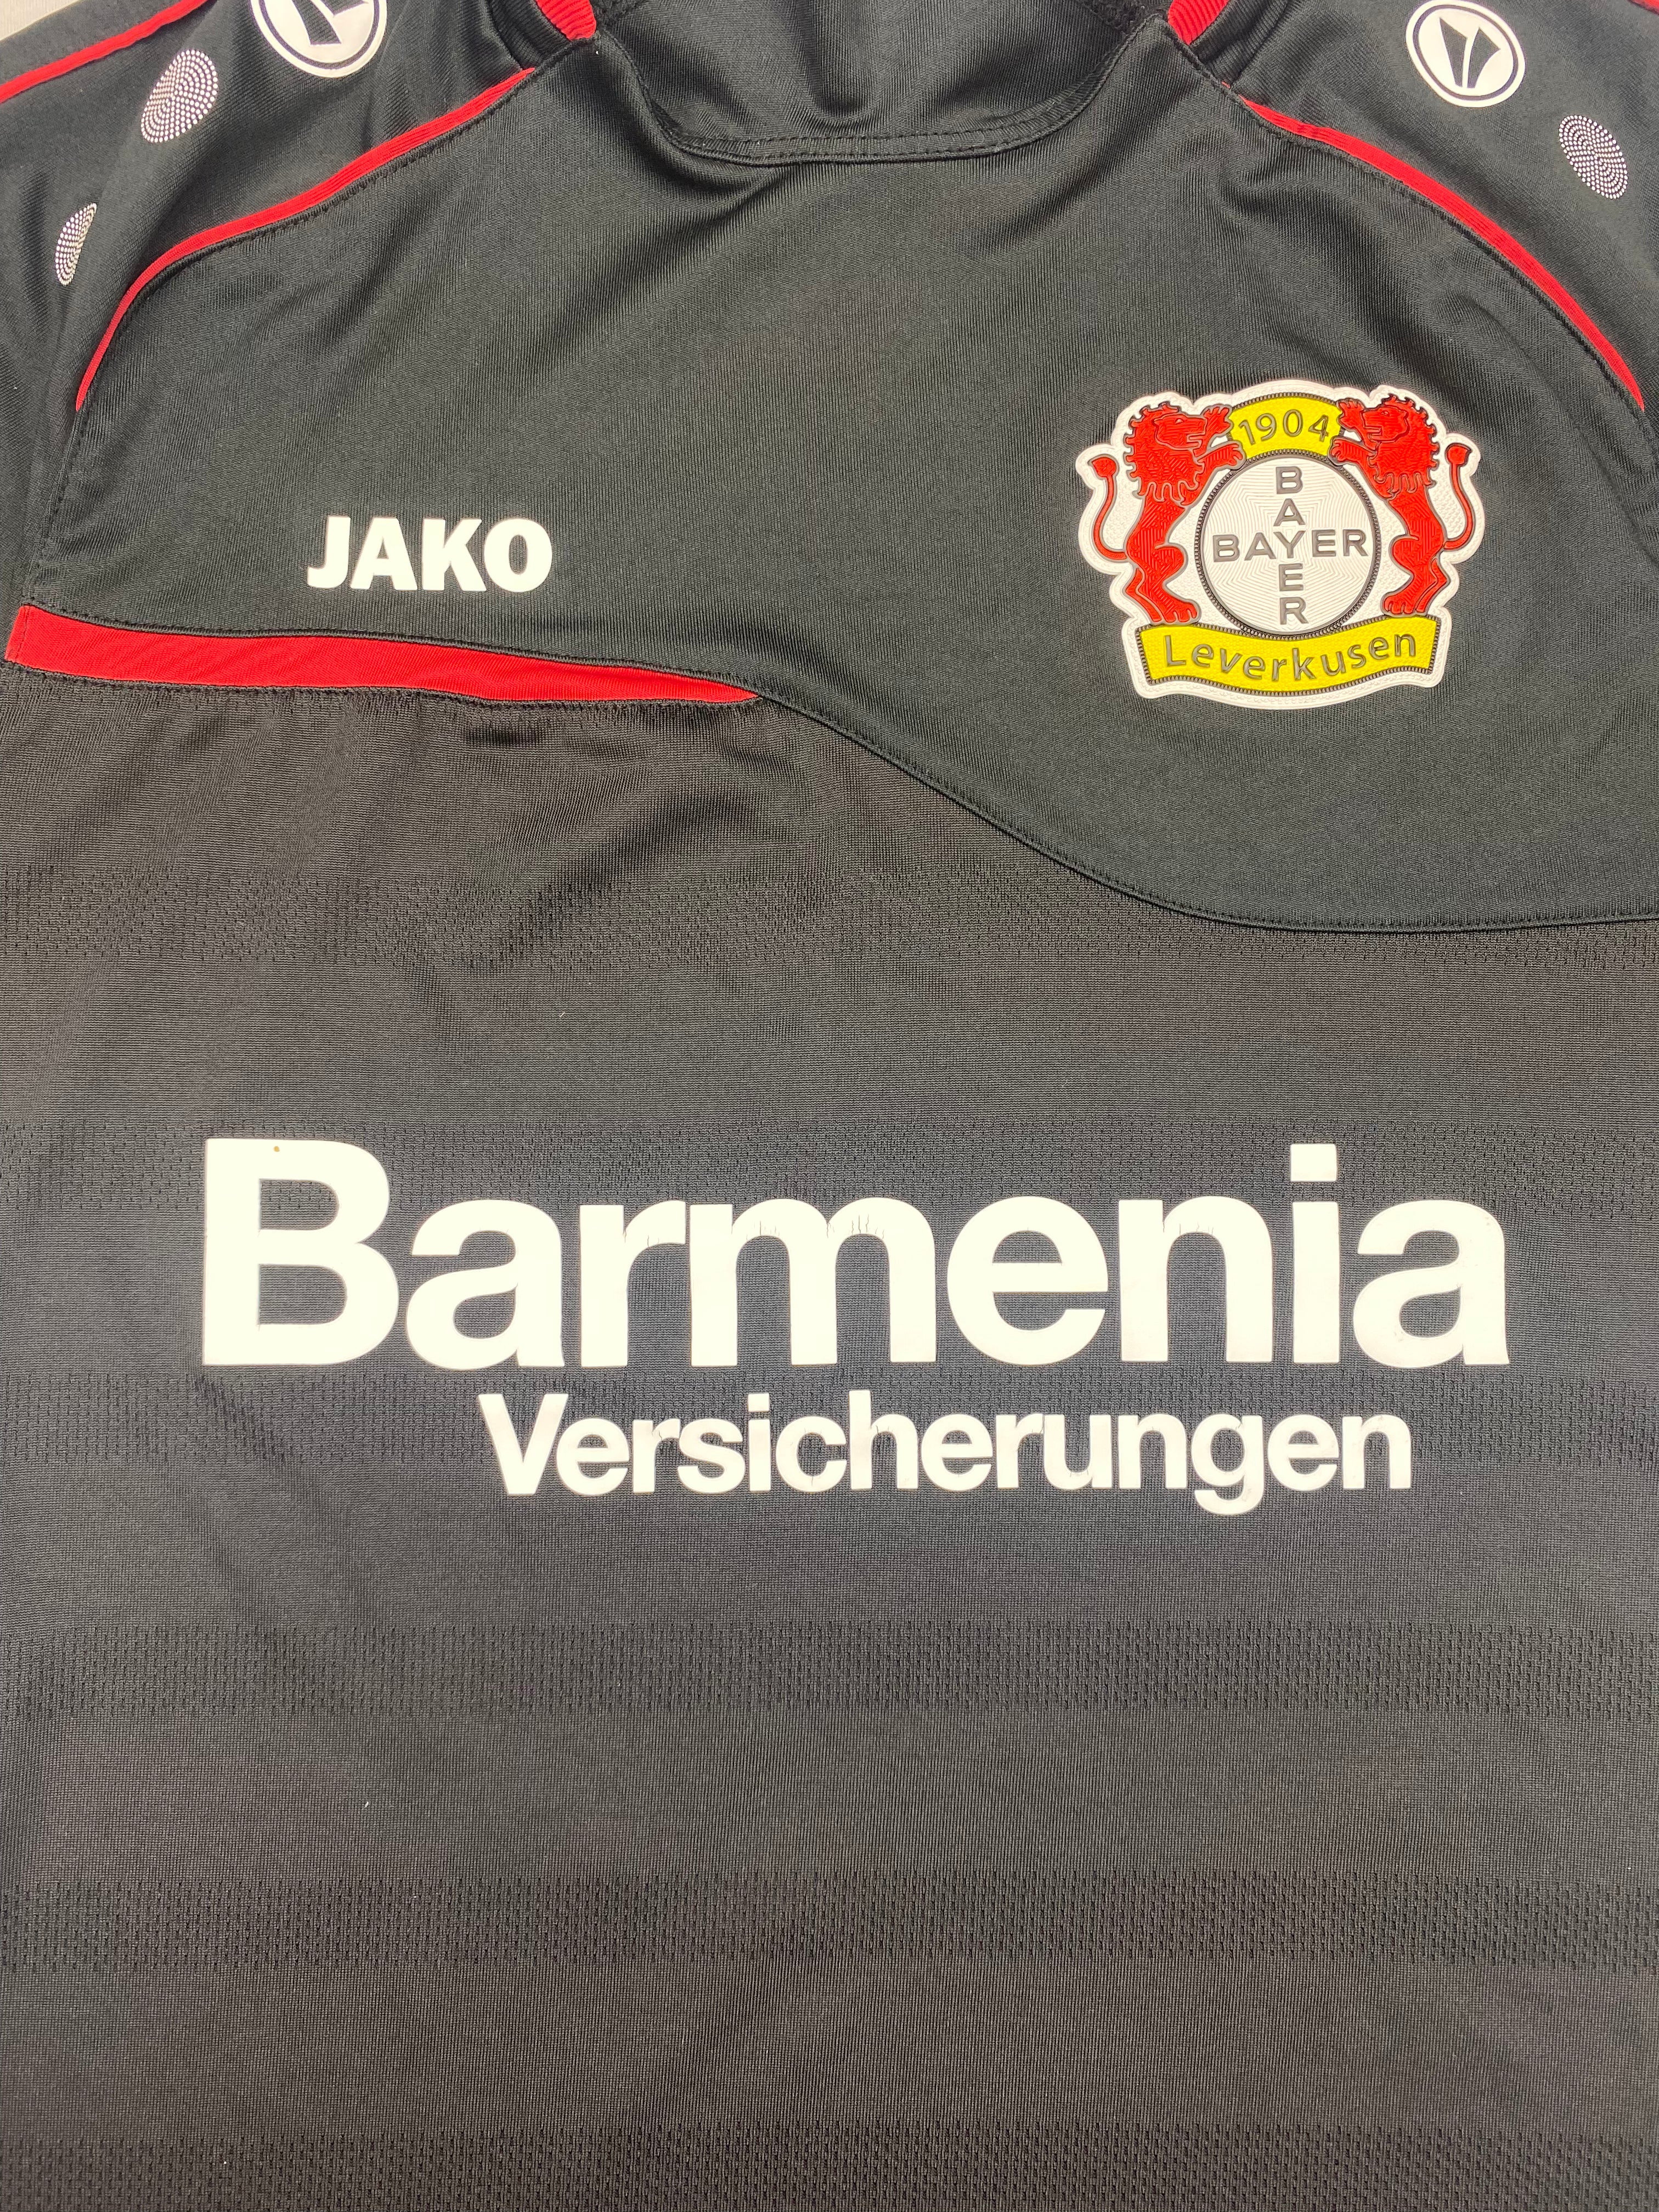 2016/17 Bayer Leverkusen Training Shirt (M) 7.5/10